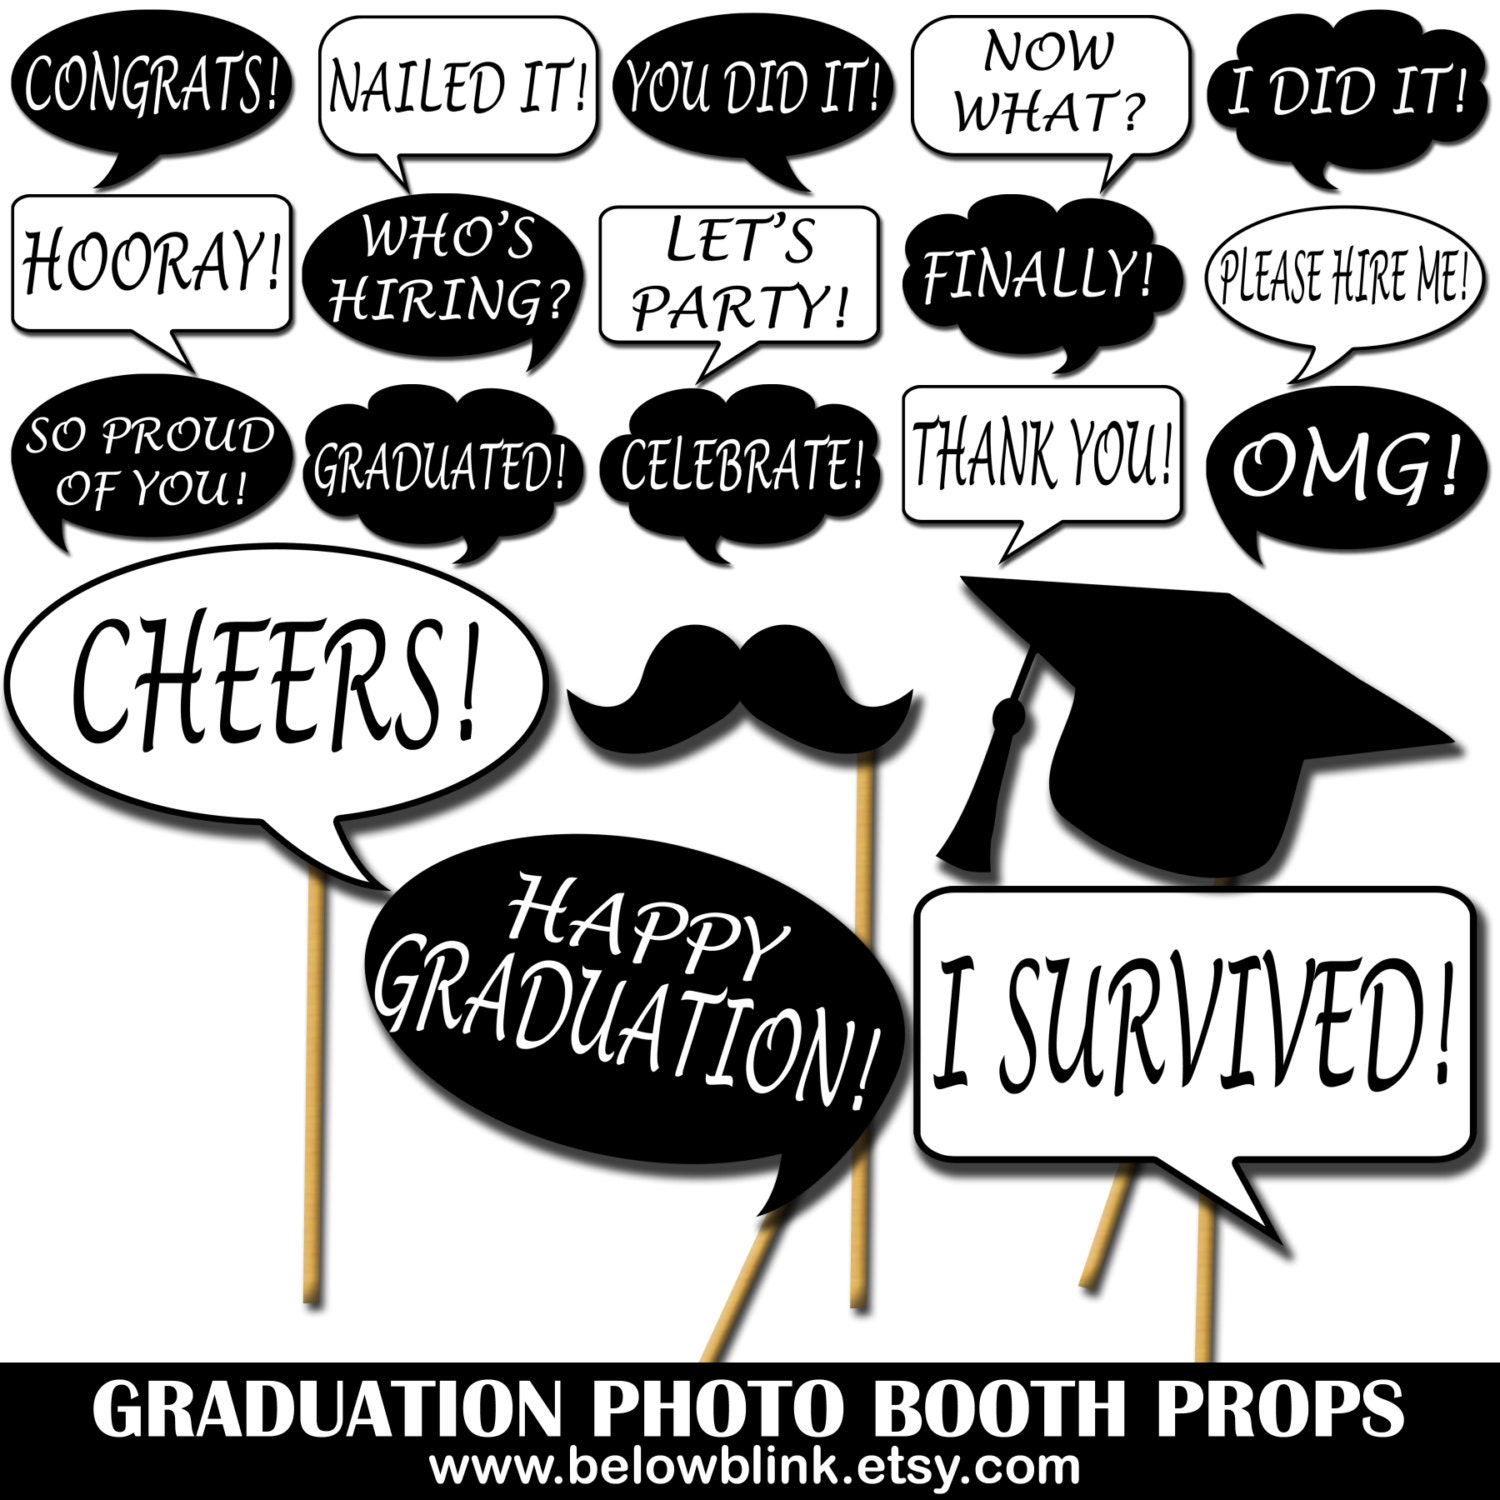 graduation-photo-booth-prop-kit-ubicaciondepersonas-cdmx-gob-mx